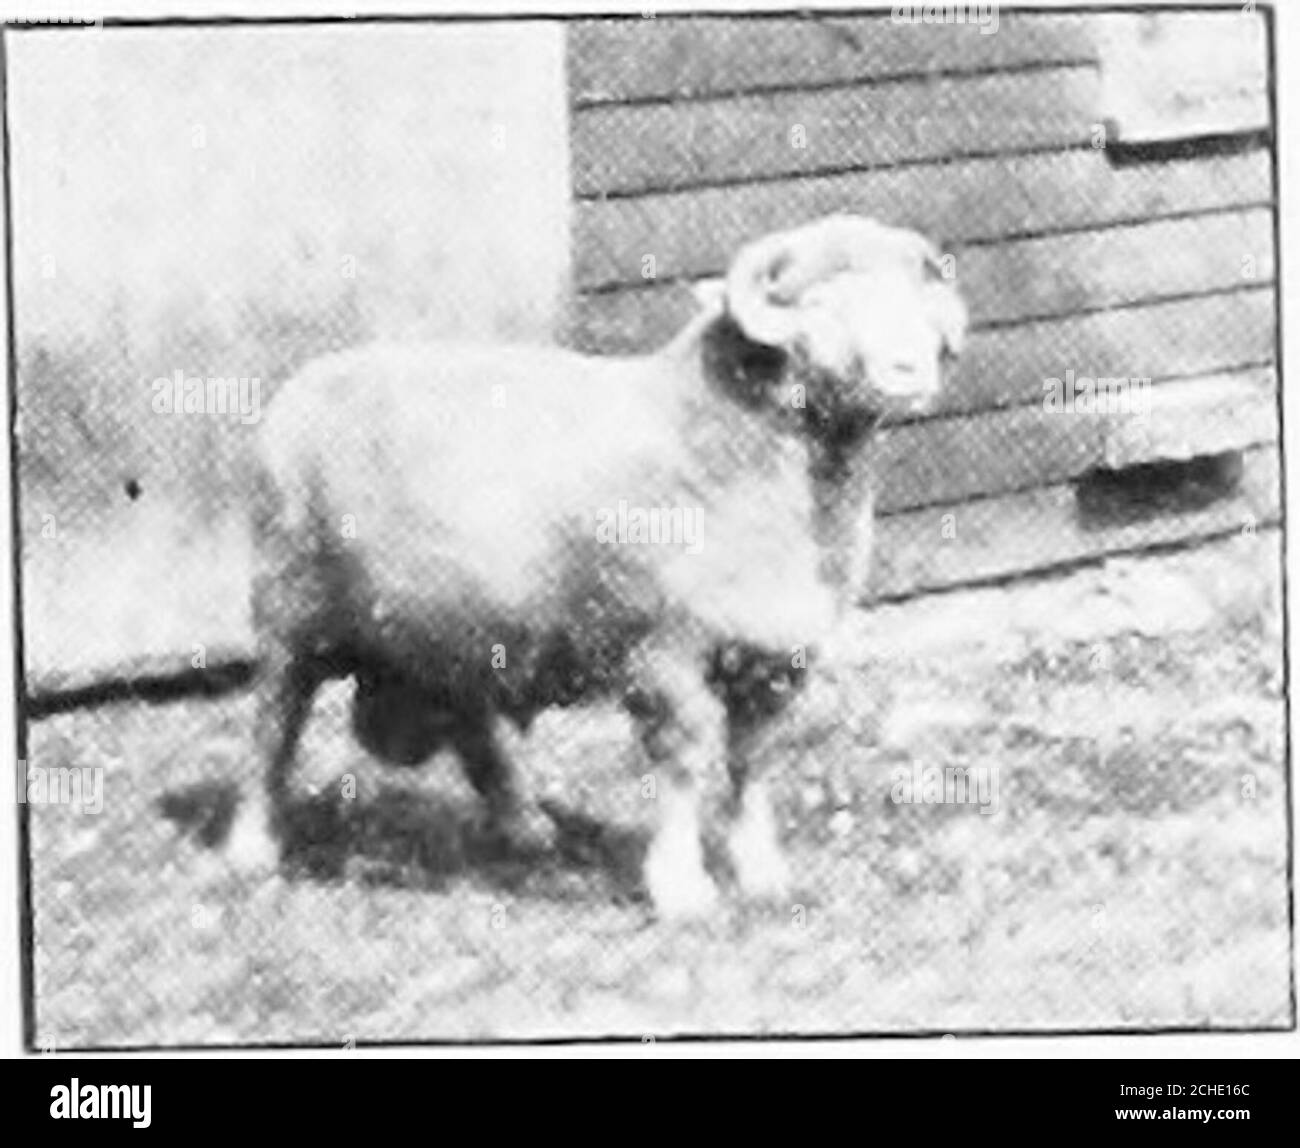 Troupeau de moutons 24 agneaux BLANC/1 fois Noir Environ 7,5 x 2,4 x 5,2 cm bois/Fourrure